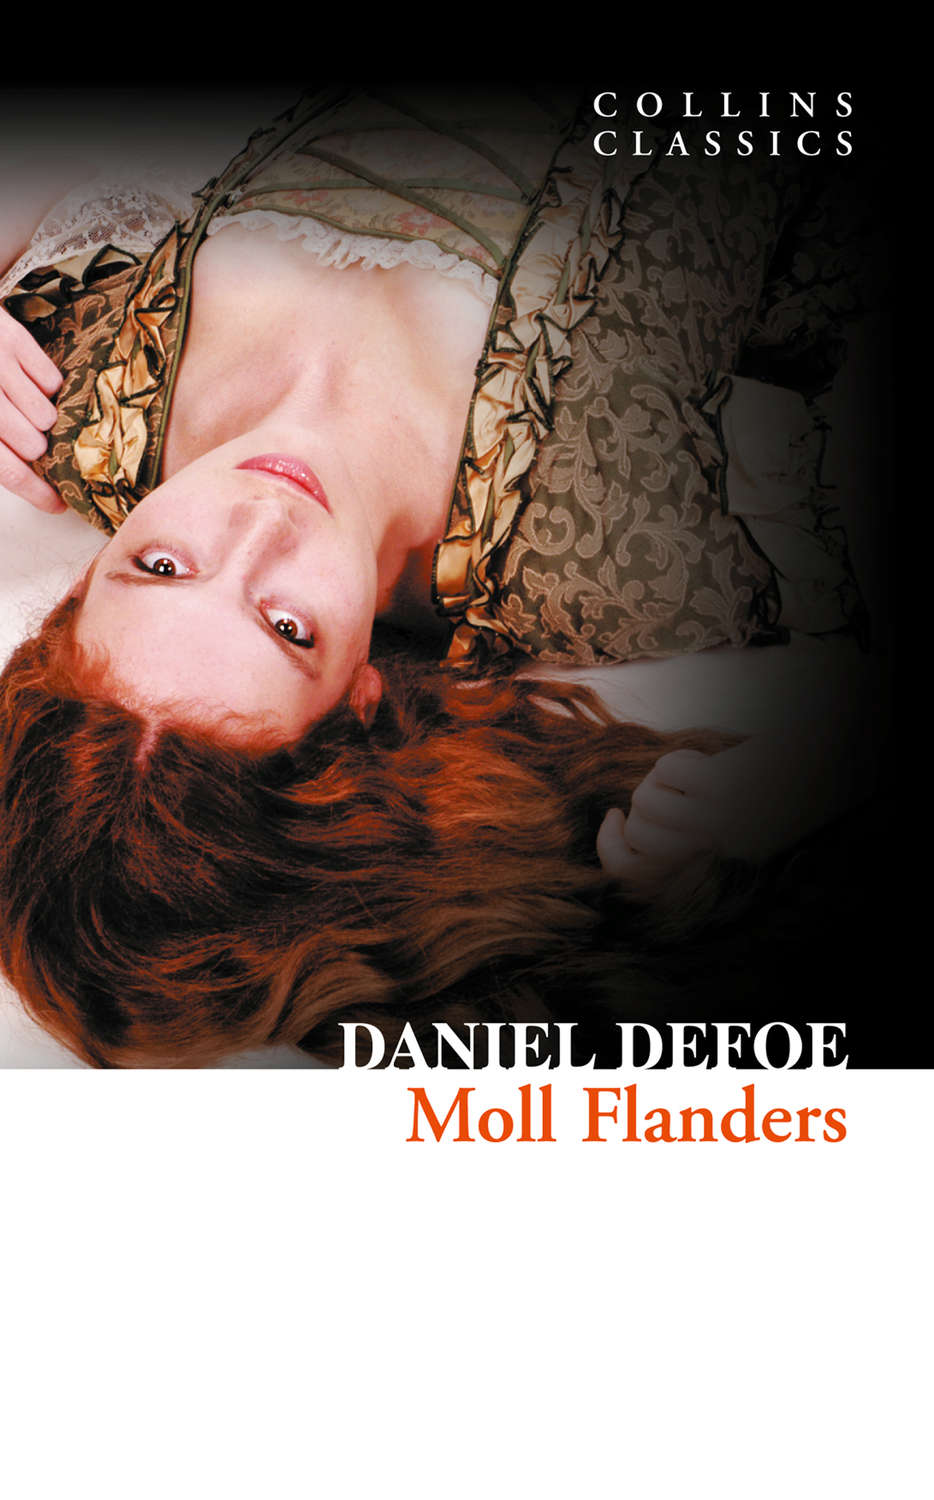 Daniel Defoe Moll Flanders Download Epub Mobi Pdf At Litres 